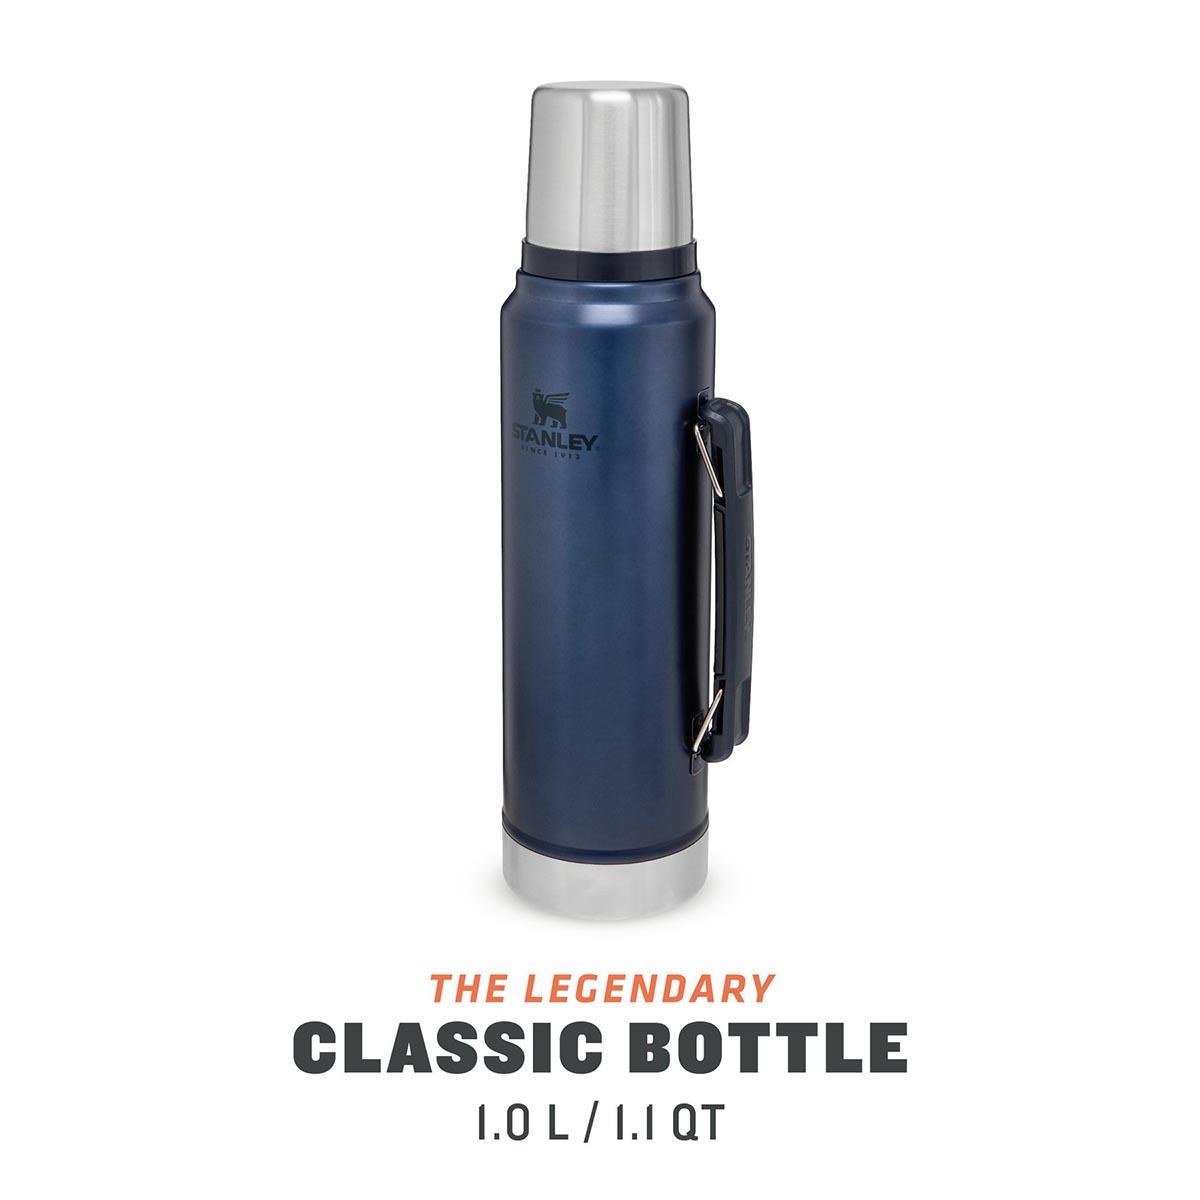  Stanley Classic Legendary  Bottle 1.0L / 1.1QT AS1008266017